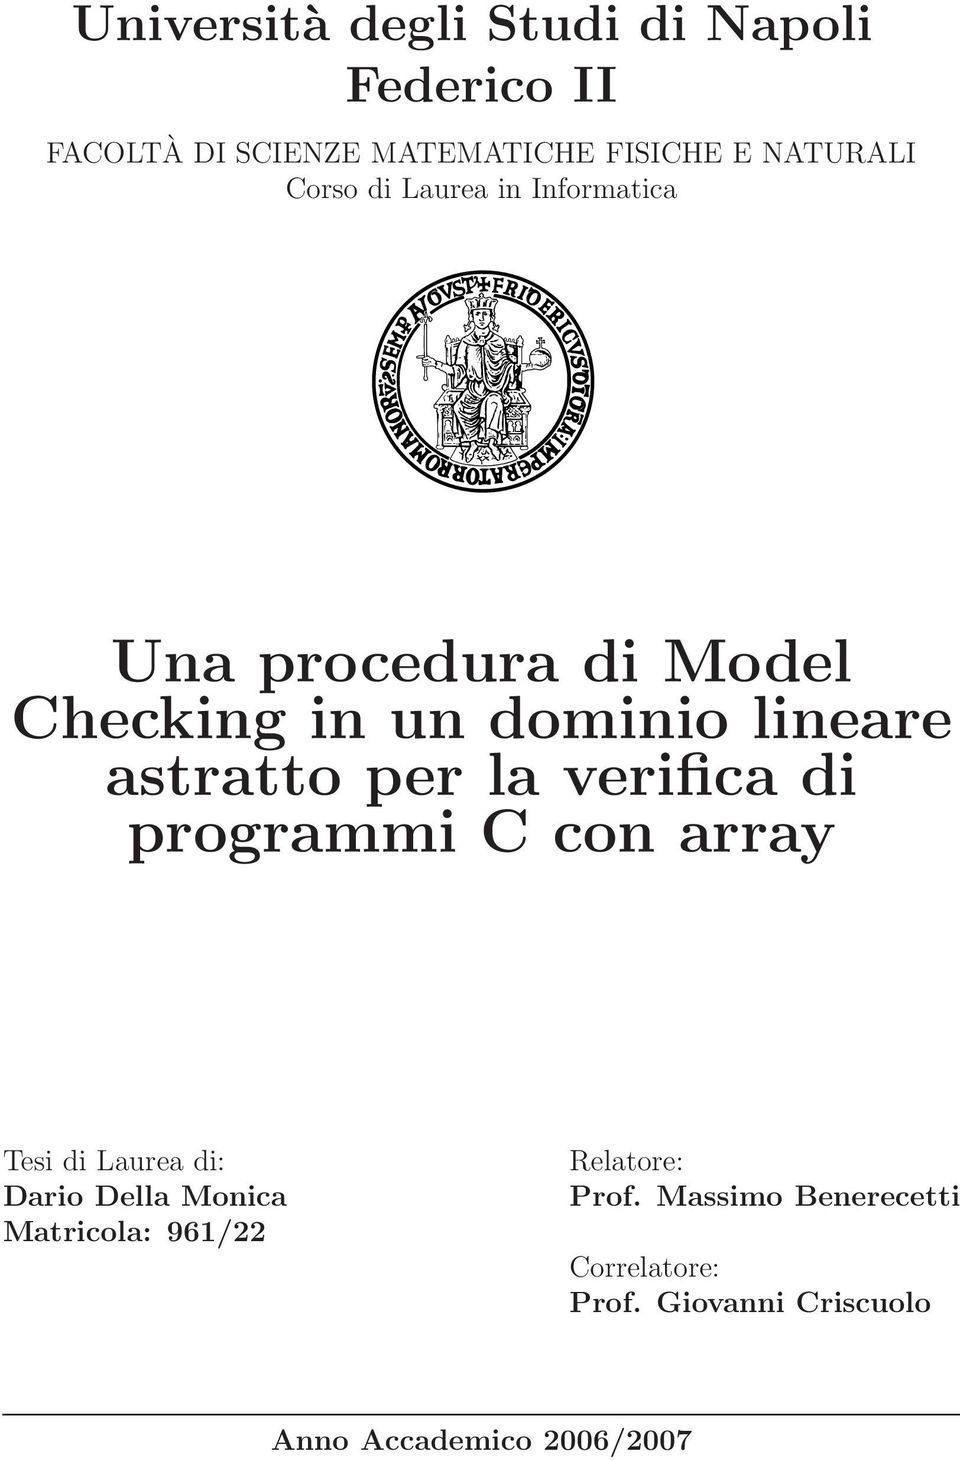 per a verifica di programmi C con array Tesi di Laurea di: Dario Dea Monica Matricoa: 961/22